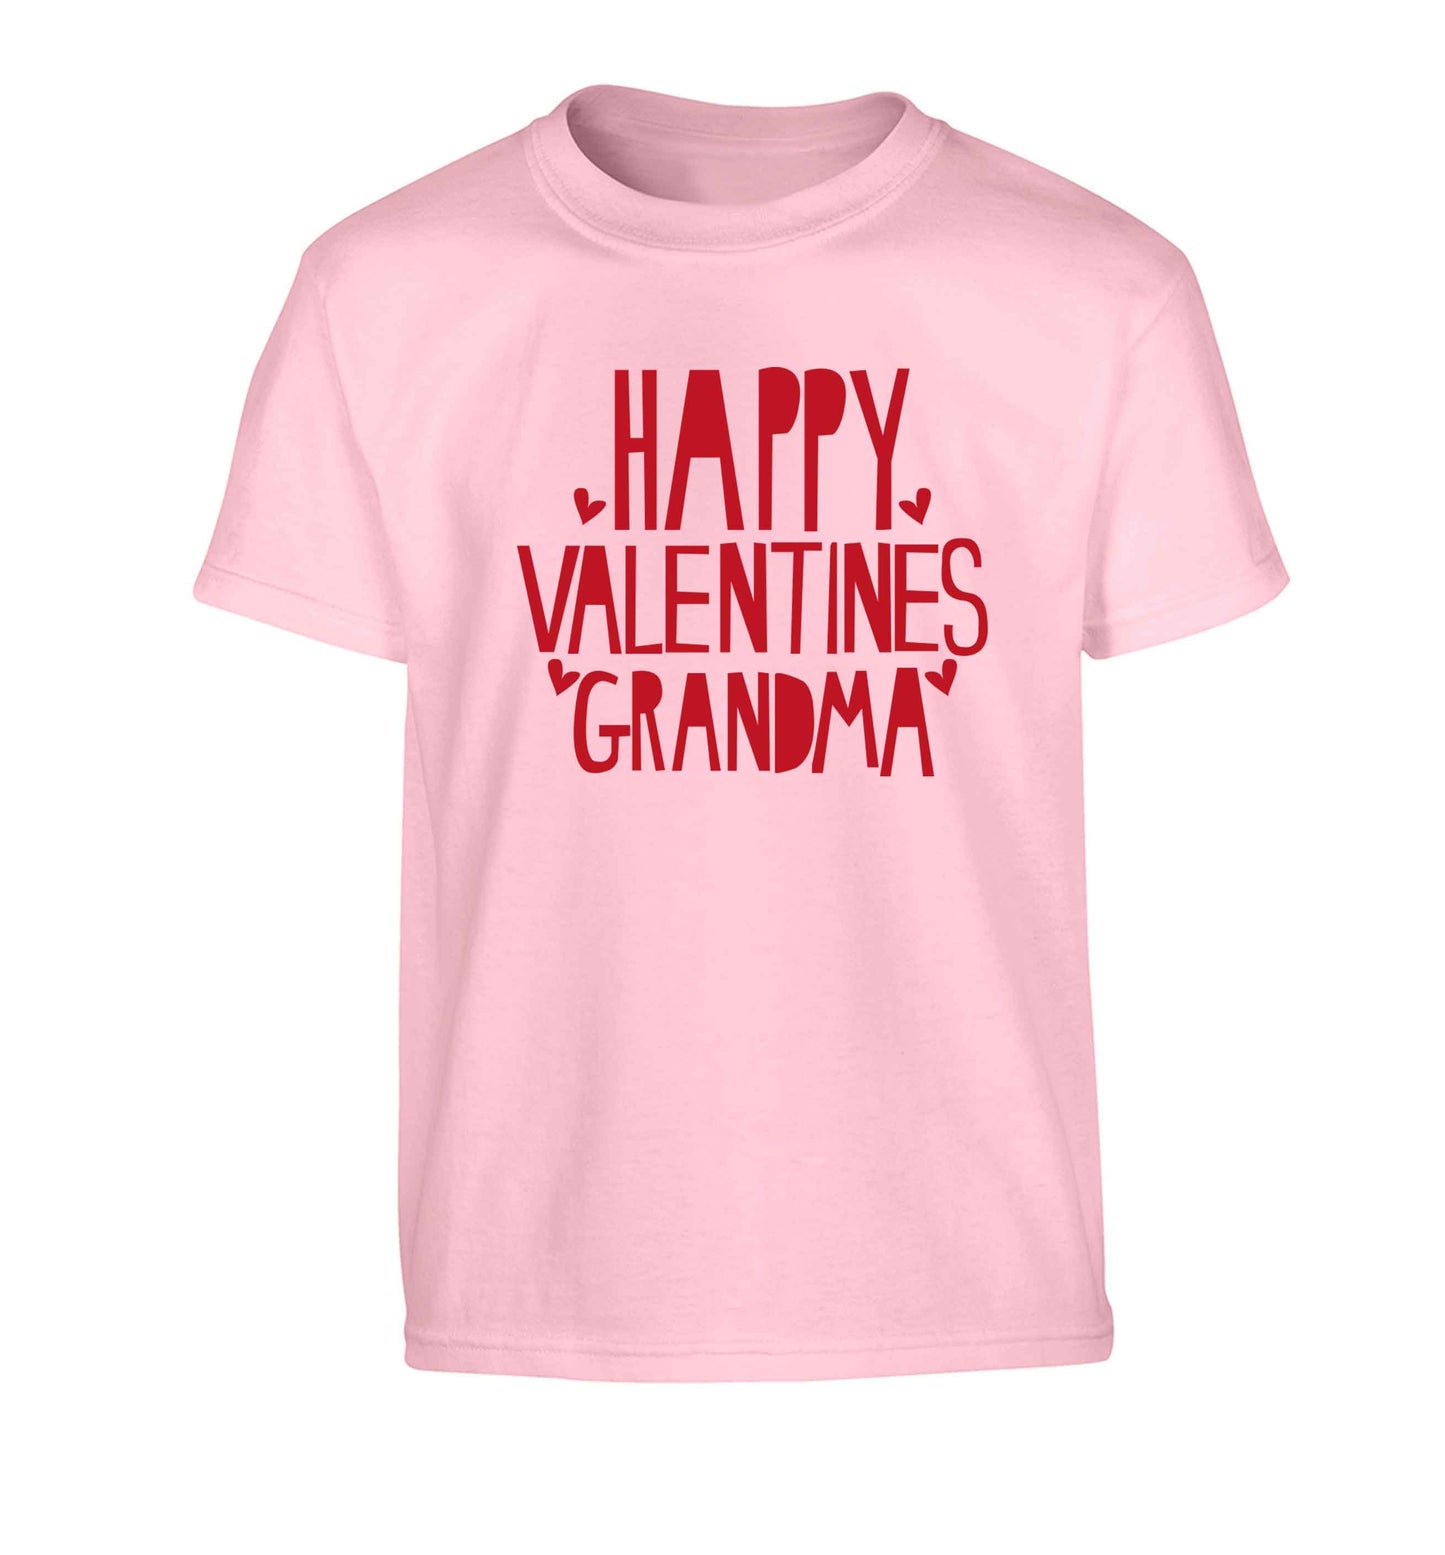 Happy valentines grandma Children's light pink Tshirt 12-13 Years